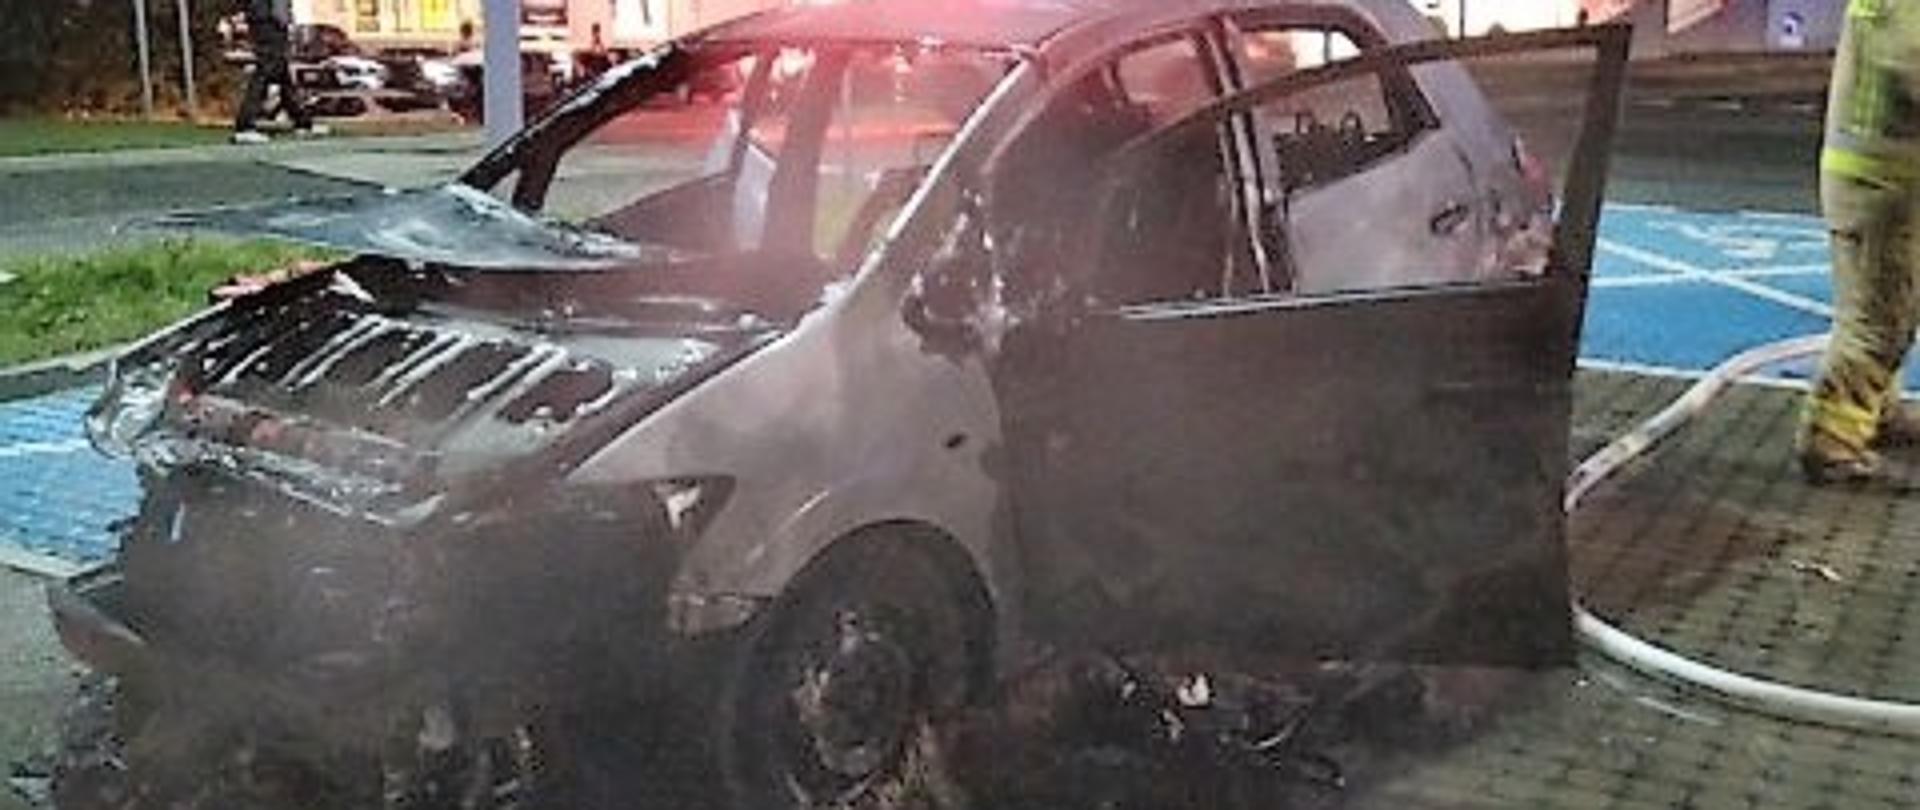 Zdjęcie przedstawia zniszczony przez ogień samochód osobowy. 